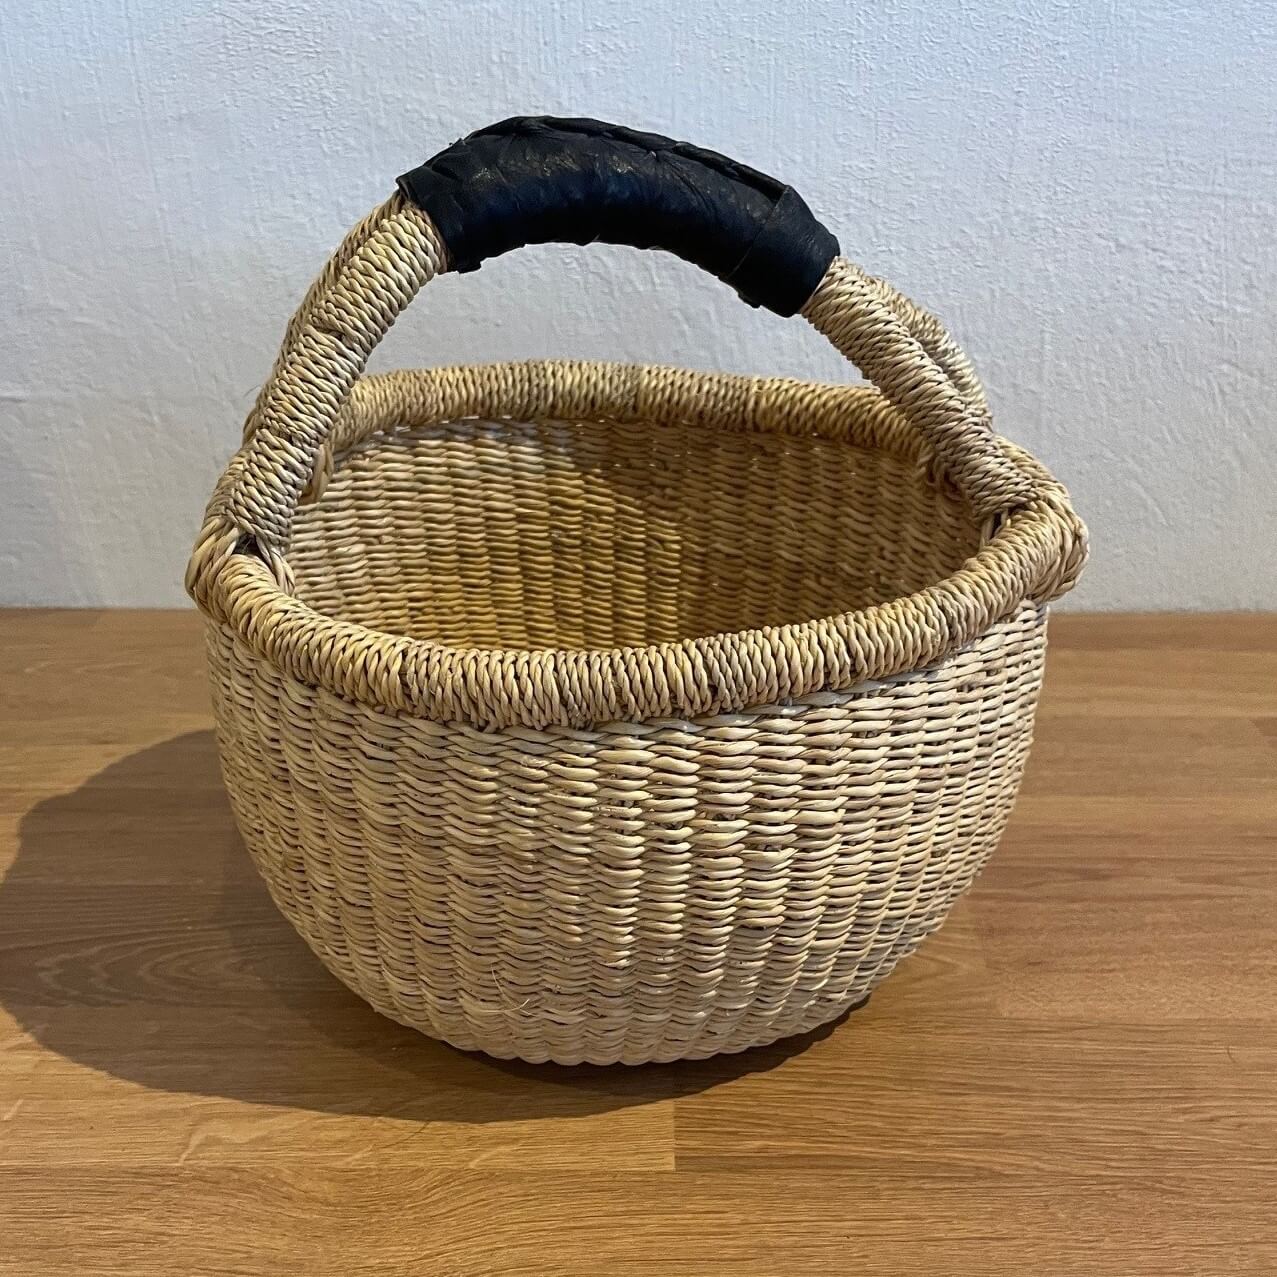 Gift package in Hammershu's basket